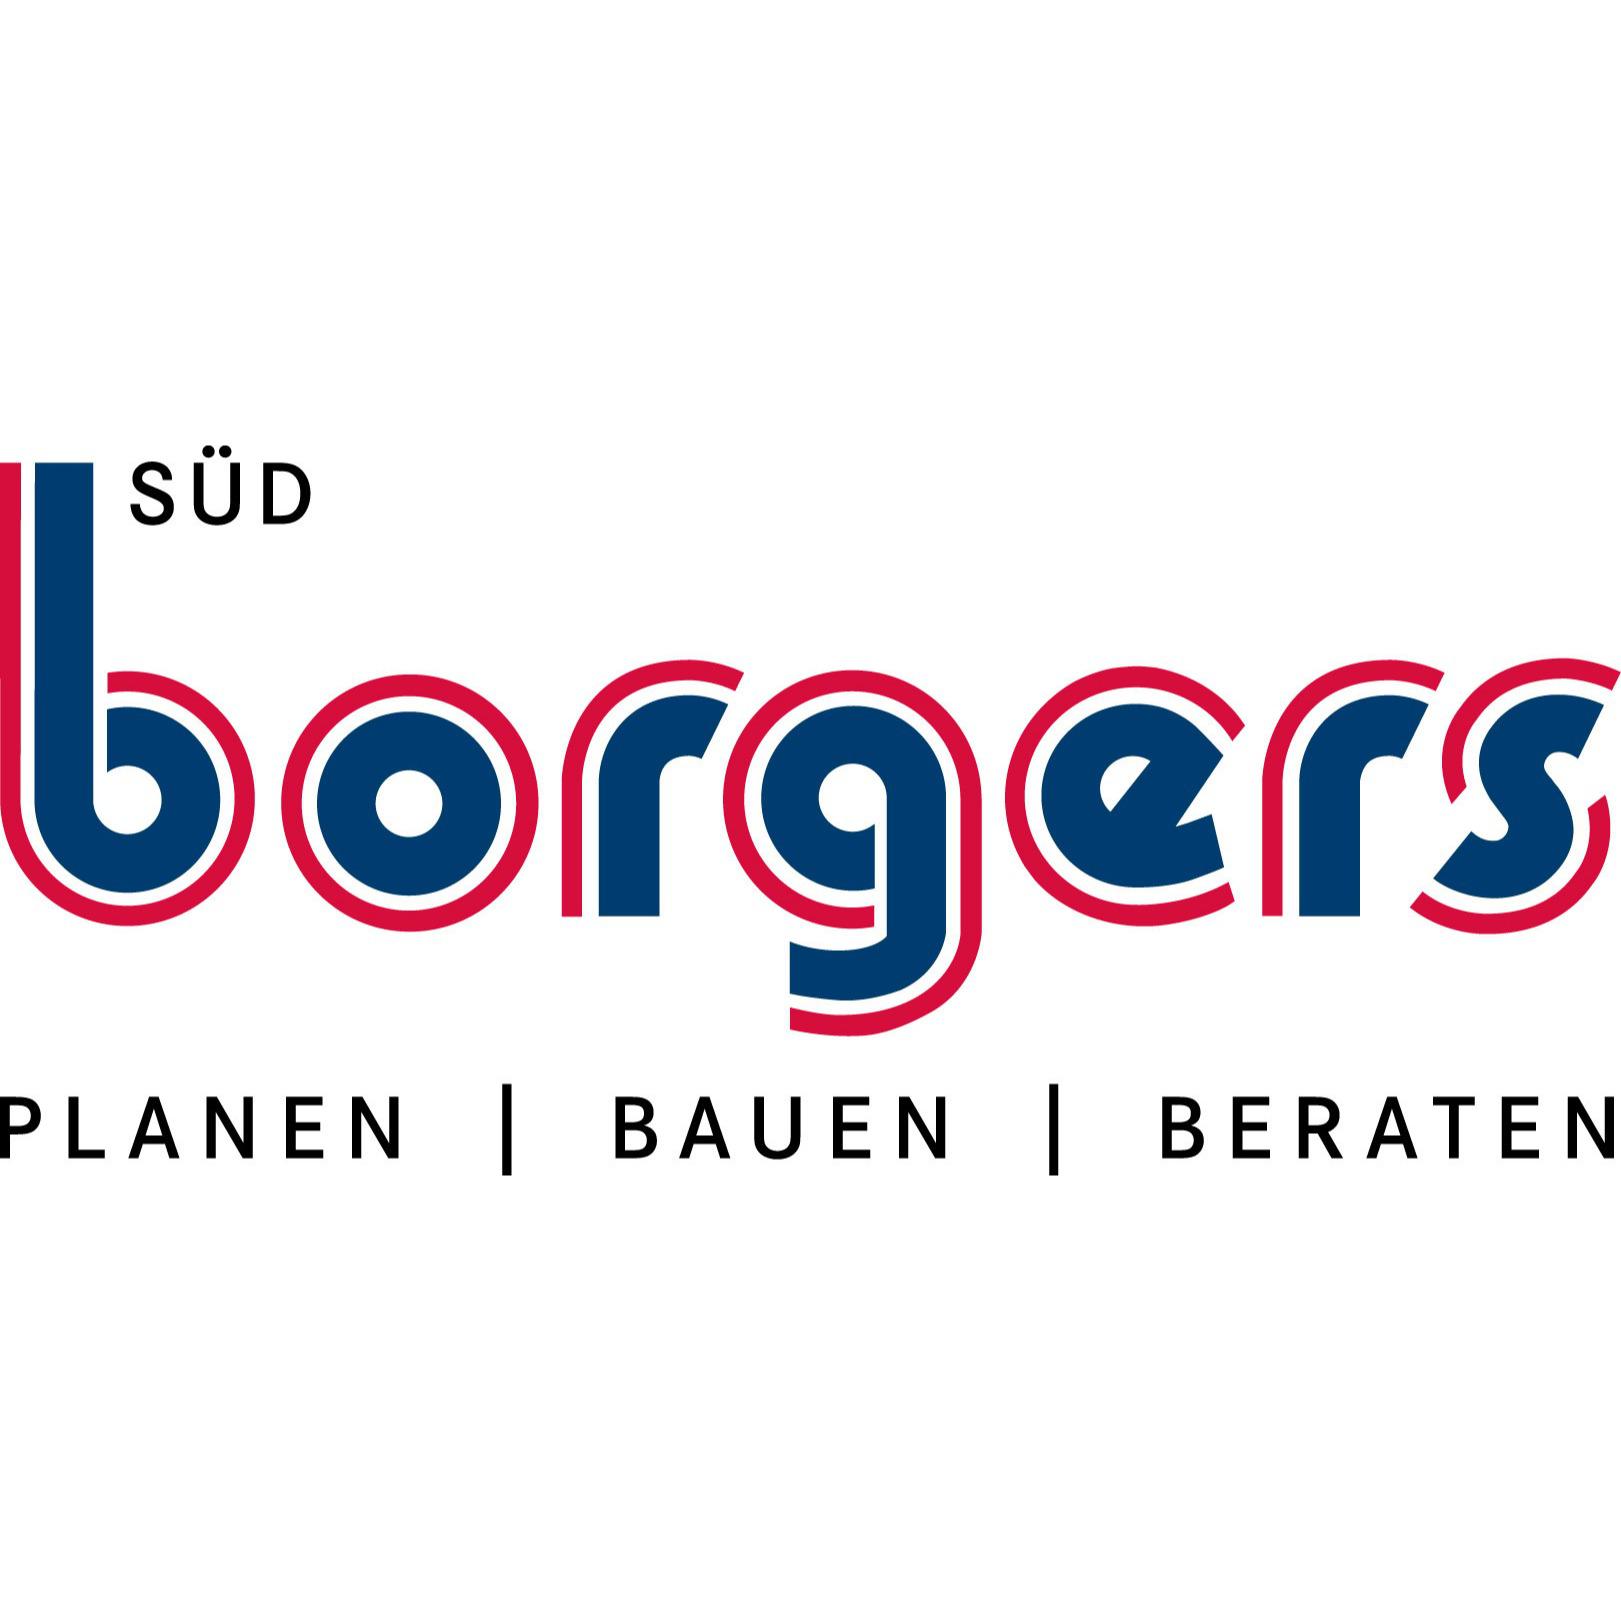 Logo von Borgers Süd GmbH